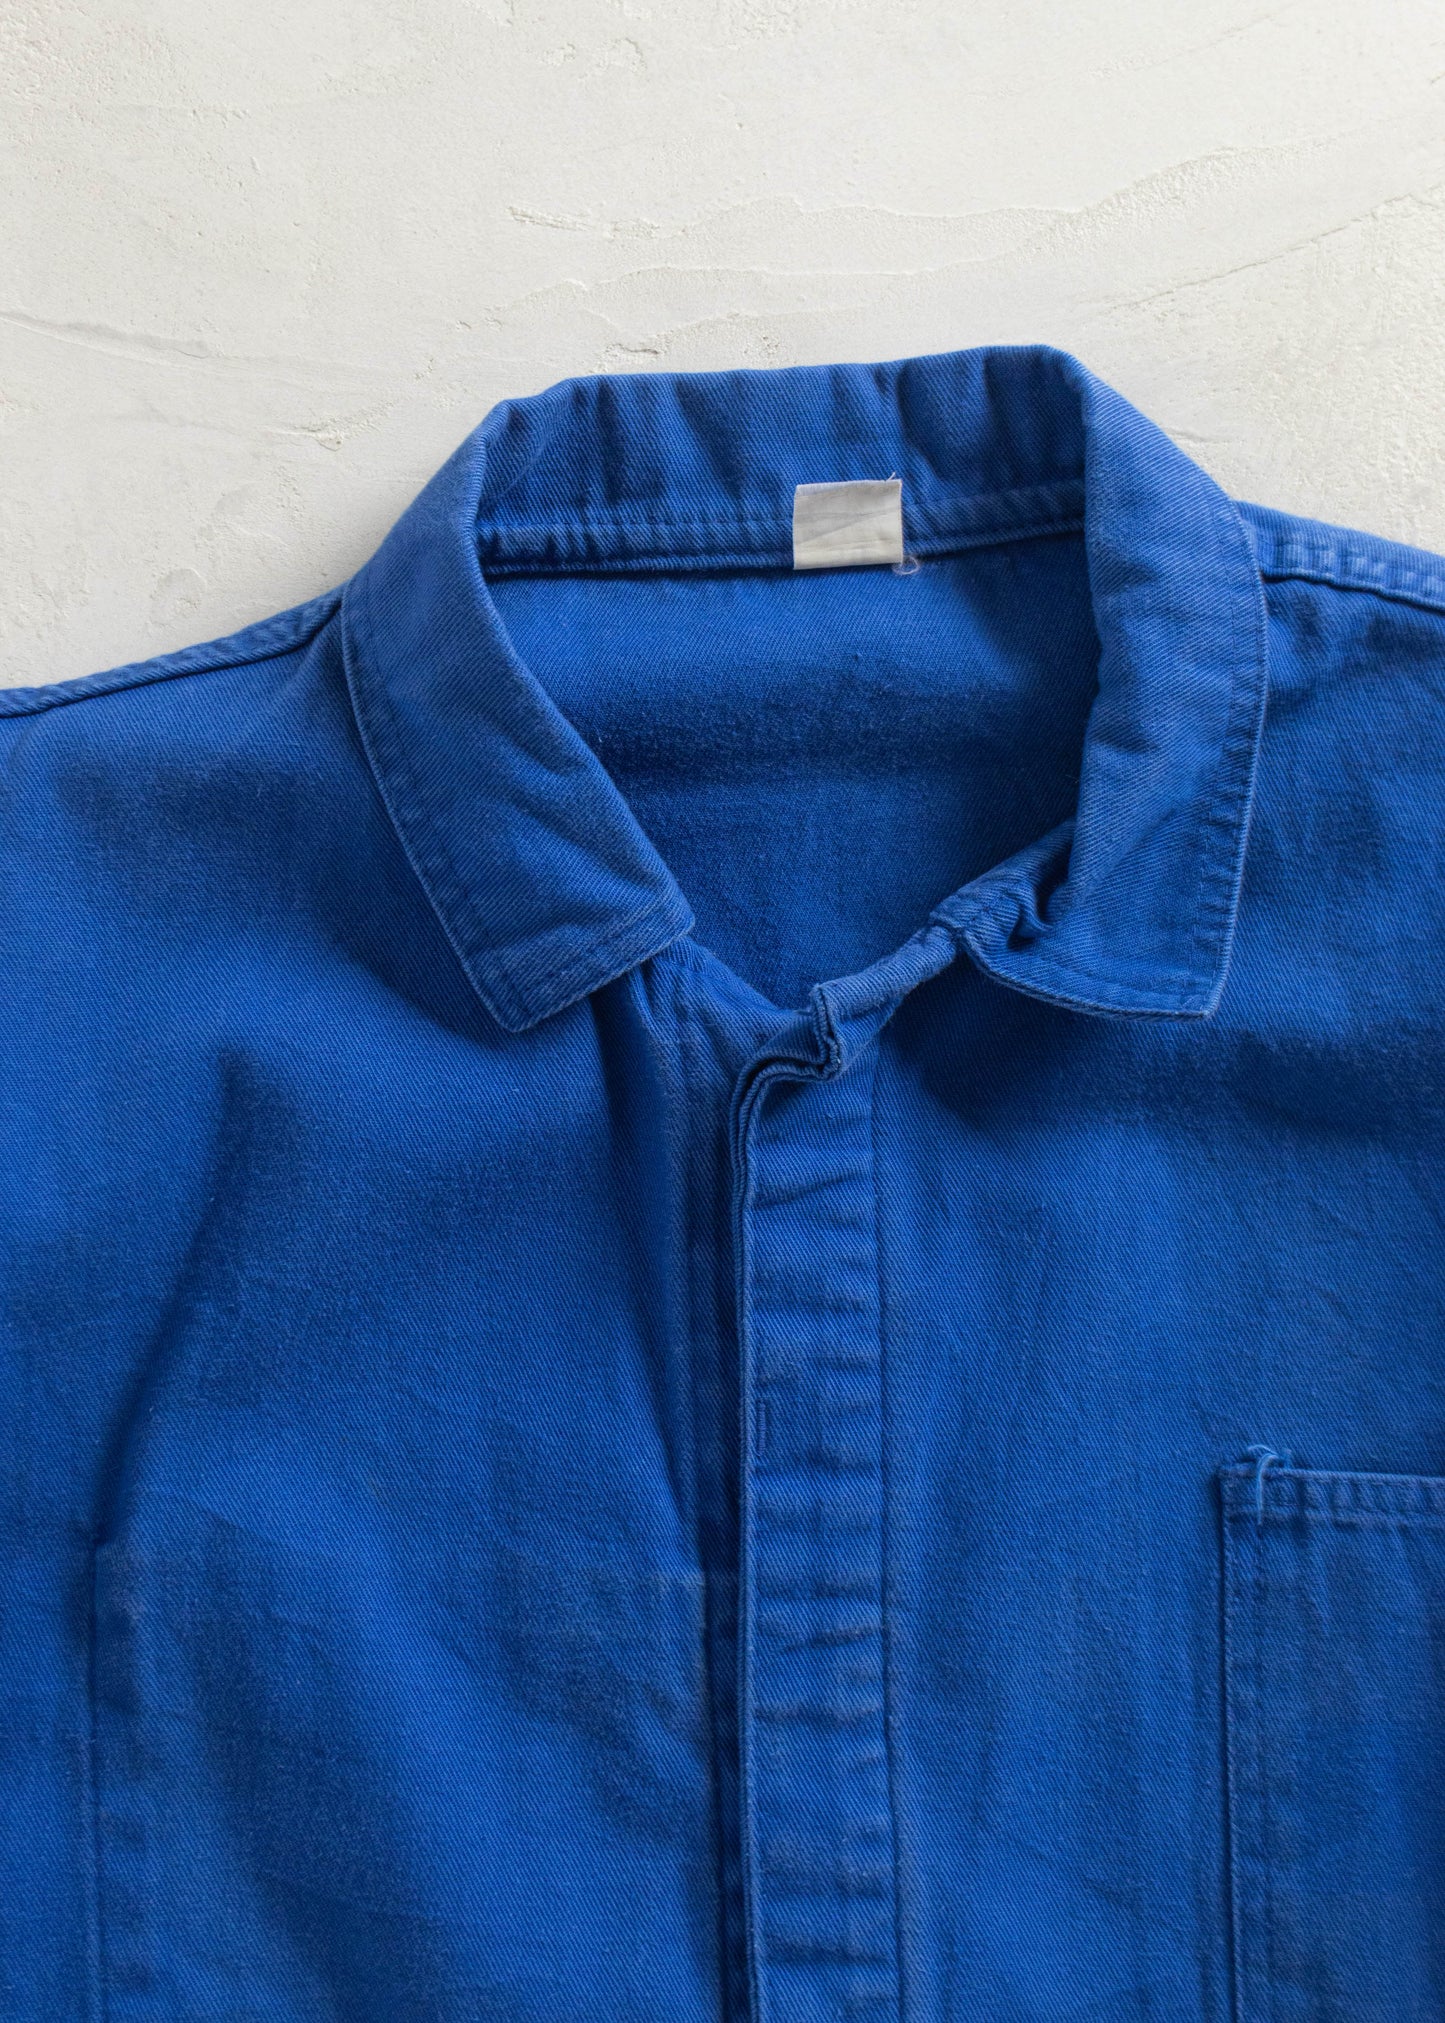 1980s Bleu de Travail French Workwear Chore Jacket Size XL/2XL